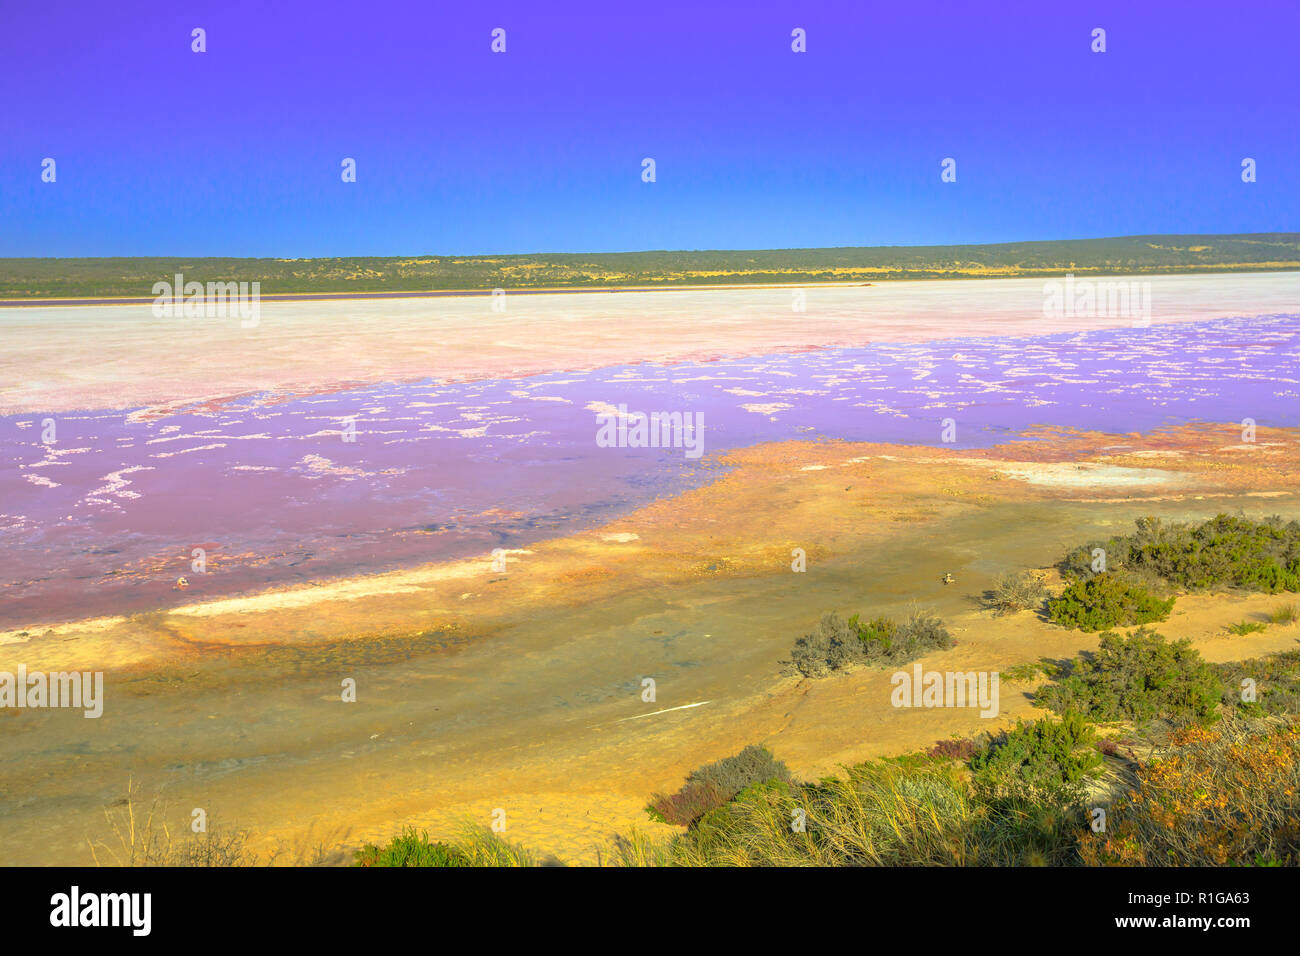 Luftaufnahme von Rosa See Aussichtspunkt von Salt Lake in Port Gregory, Western Australia. Hutt Lagoon ist rosa Farbe, die für die Präsenz von Algen. Beliebte Attraktion in Australien. Kopieren Sie Platz. Stockfoto